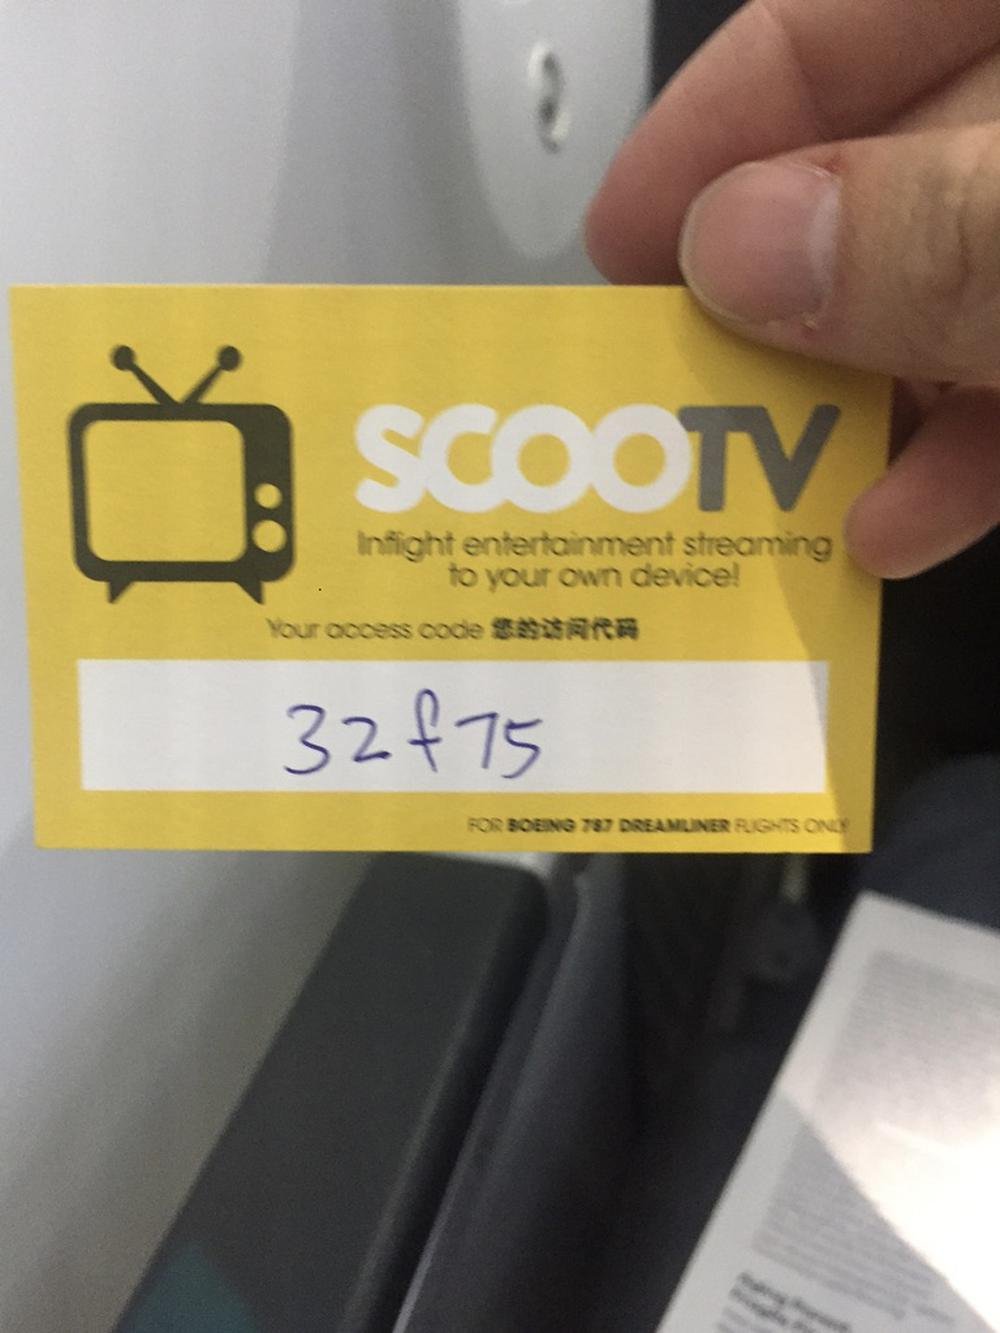 Entertainment code for ScootBiz passengers